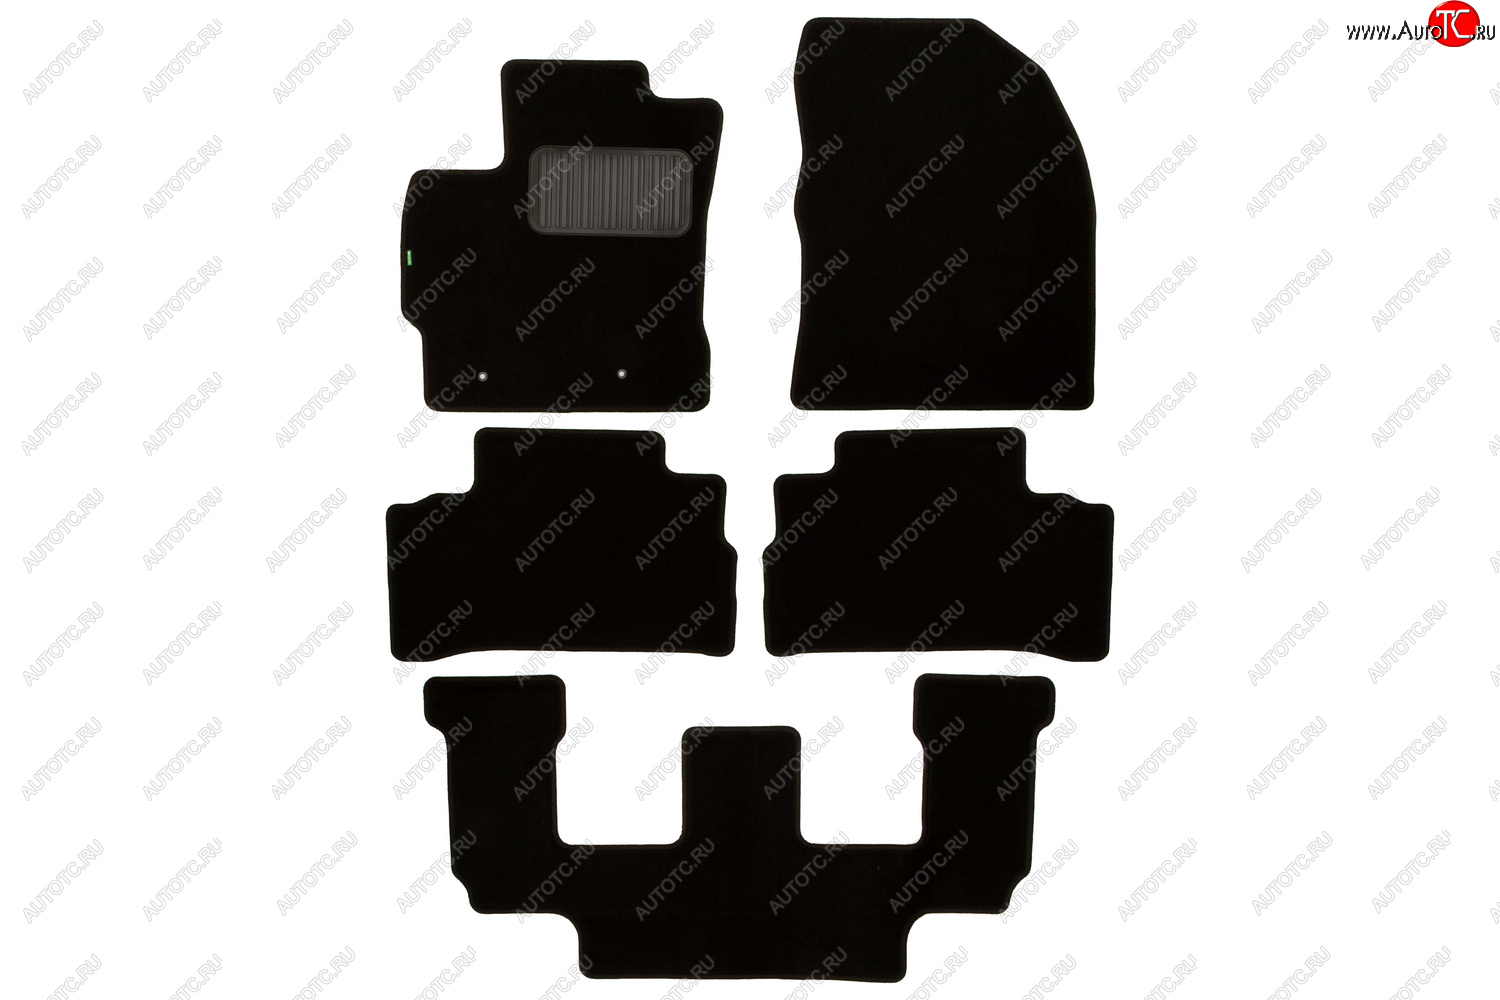 3 979 р. Комплект ковриков в салон (АКПП, чёрные, текстиль) Klever Standard  Toyota Verso  R20 (2009-2012)